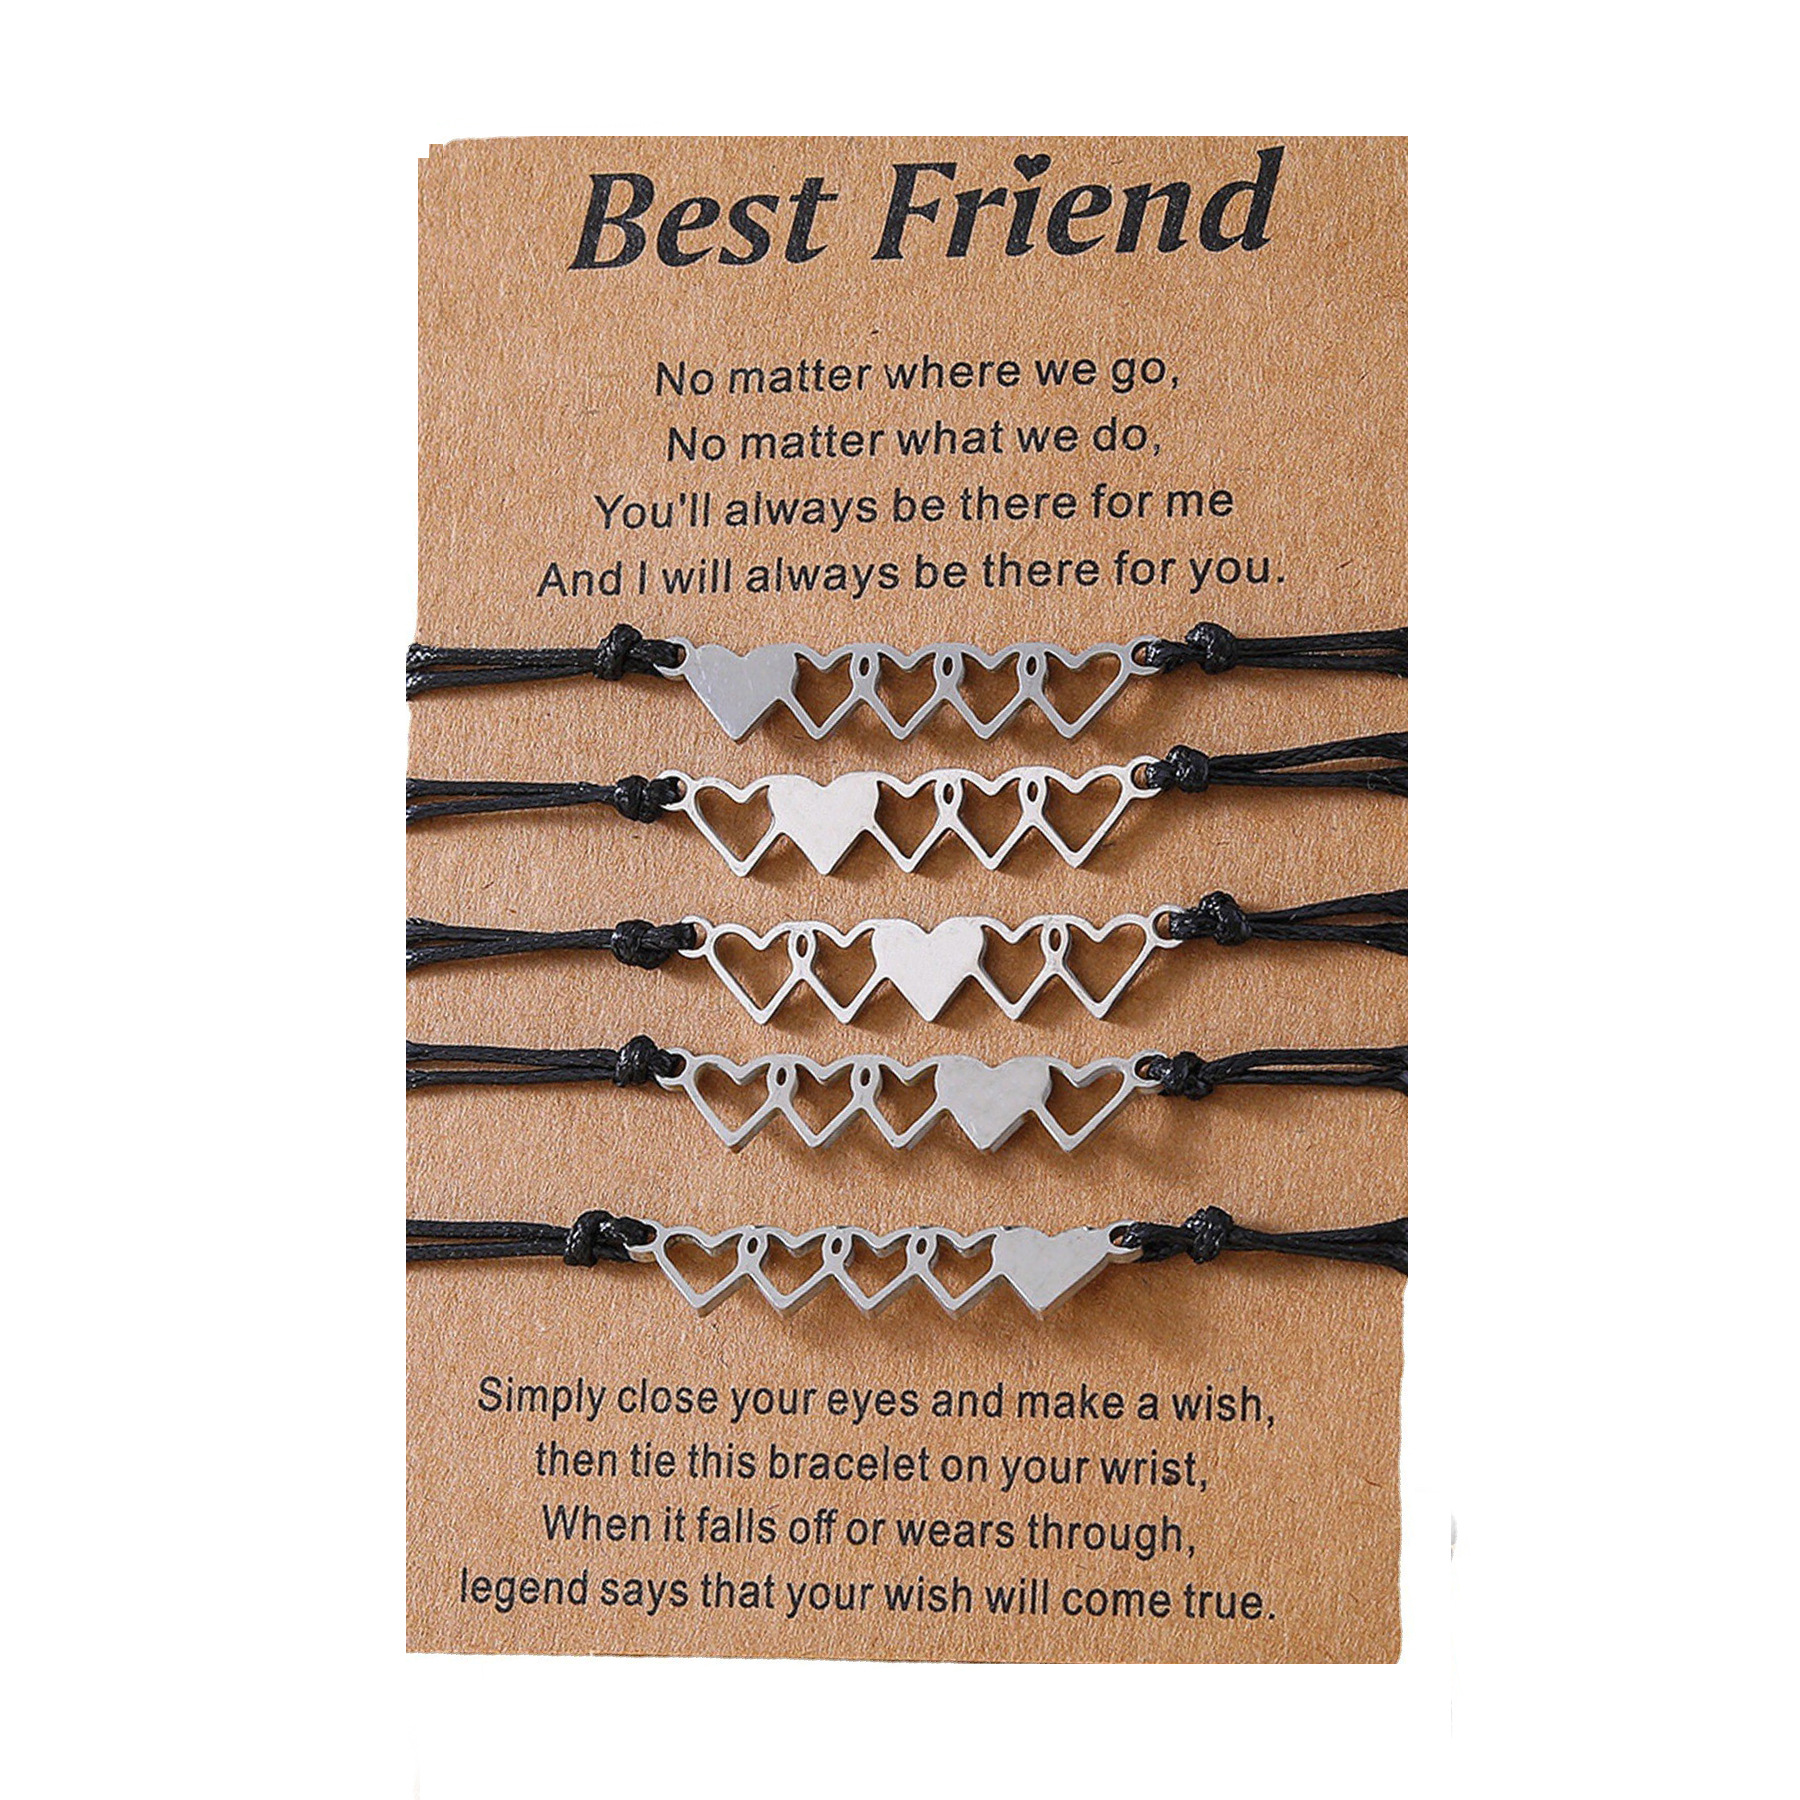 1:Good friend card